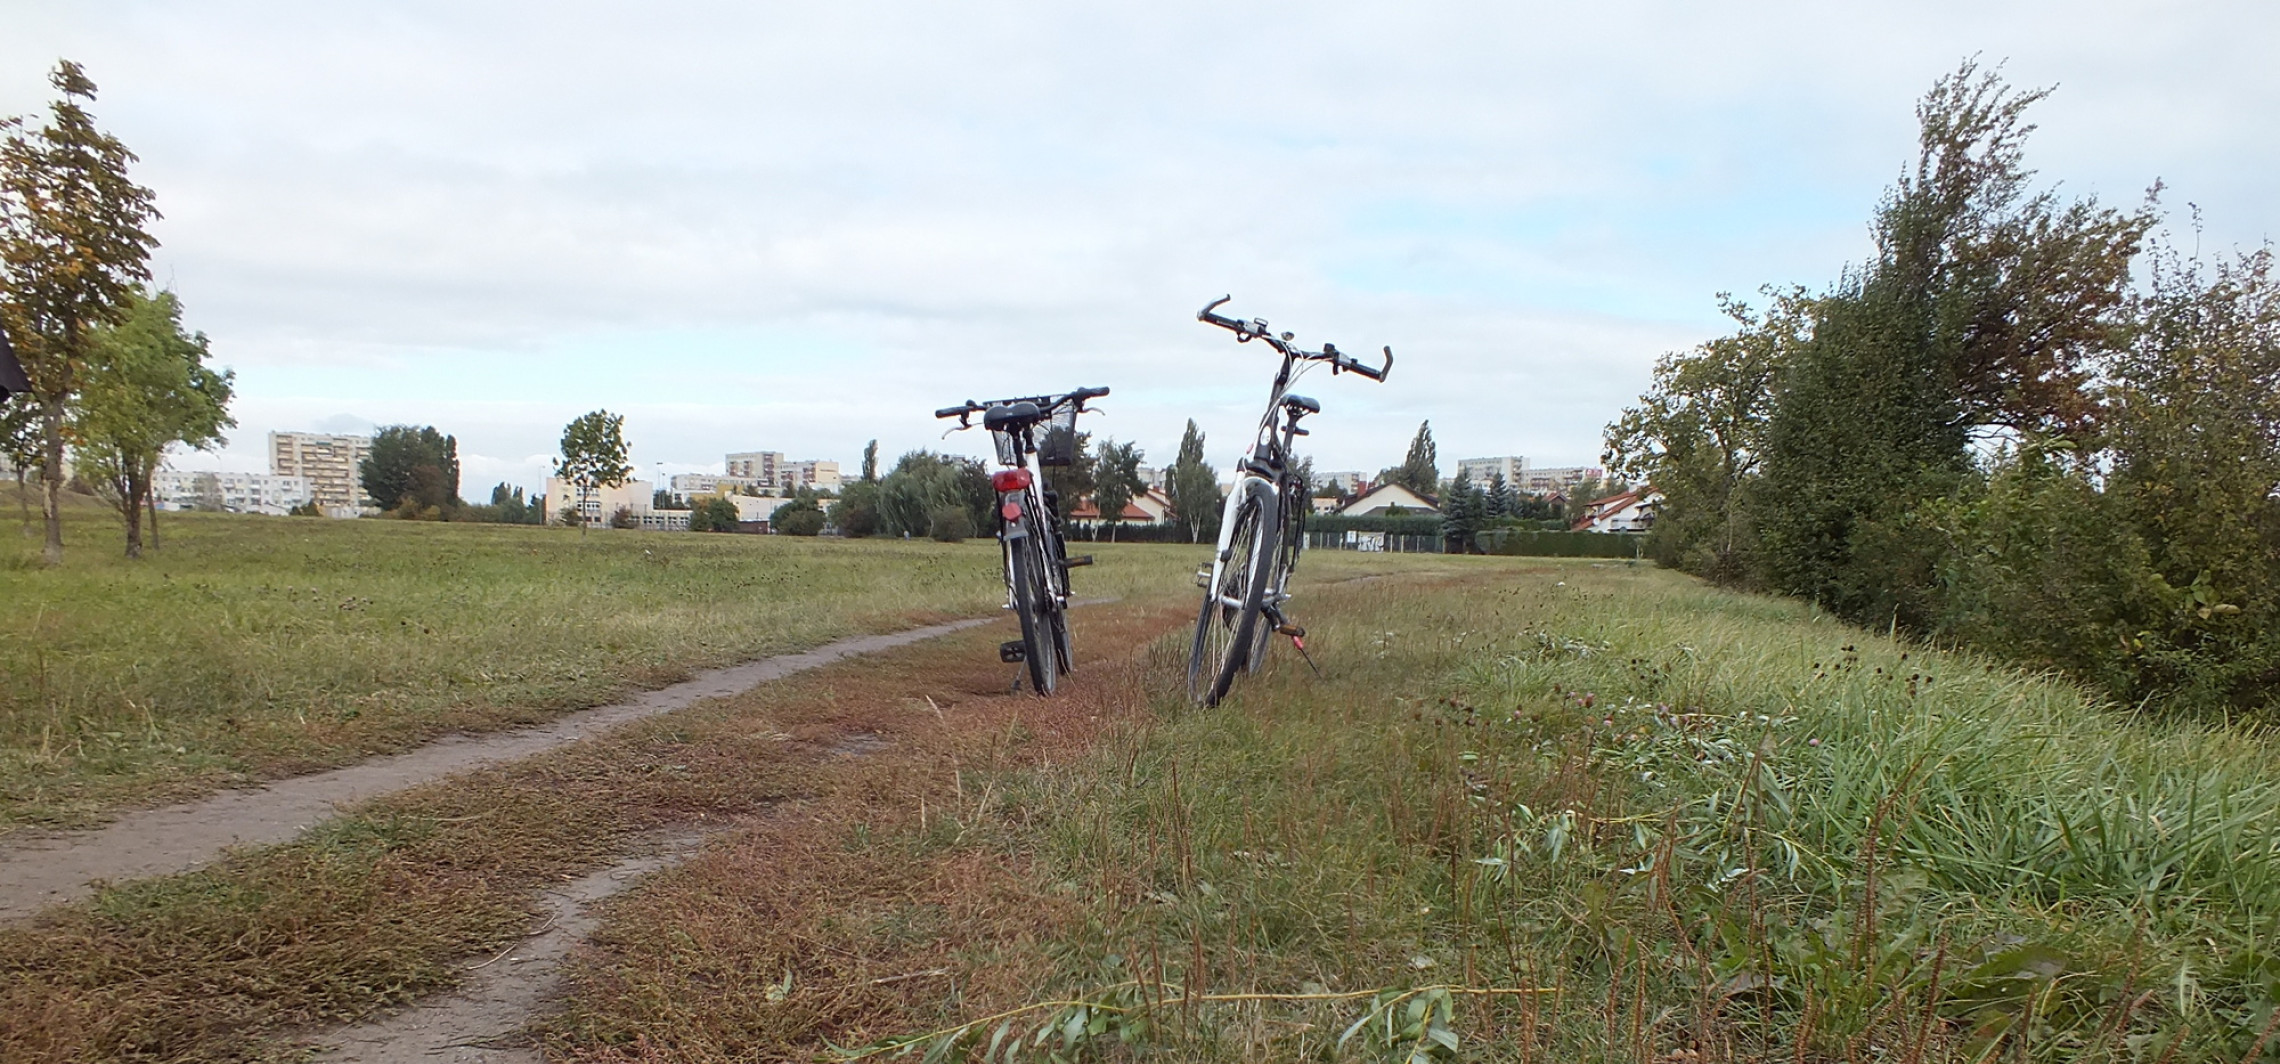 Inowrocław - Wydeptana ścieżka stanie się rowerową